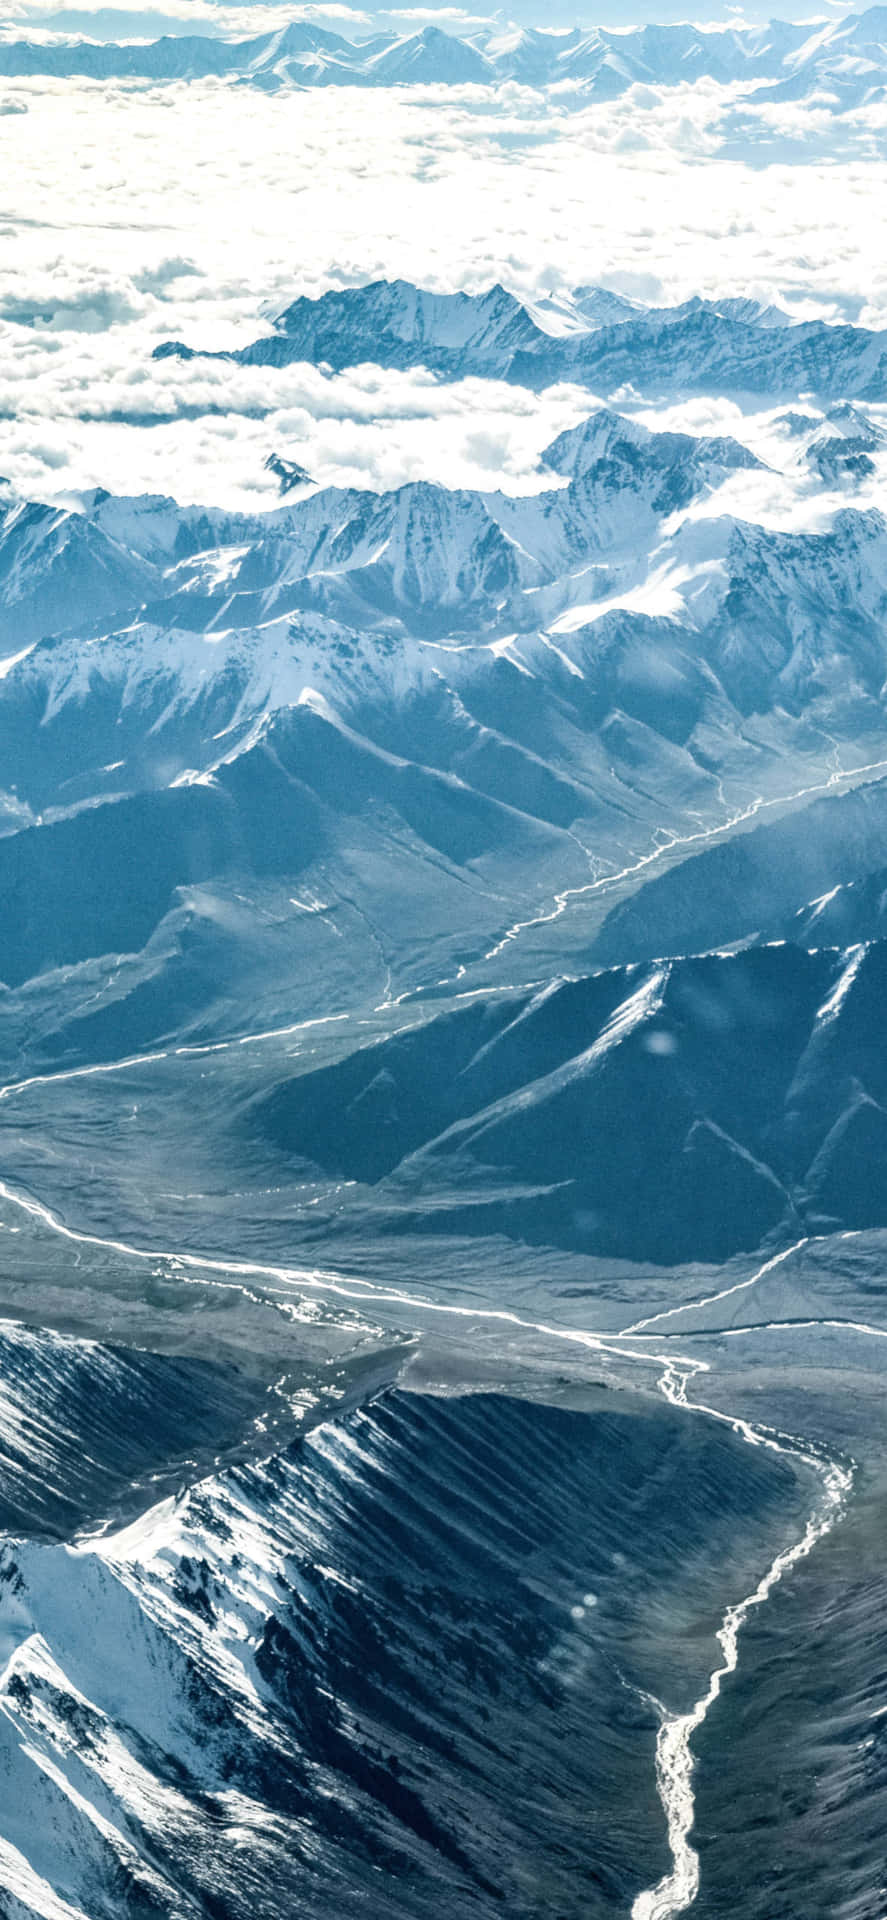 Breathtaking Views of the Himalaya